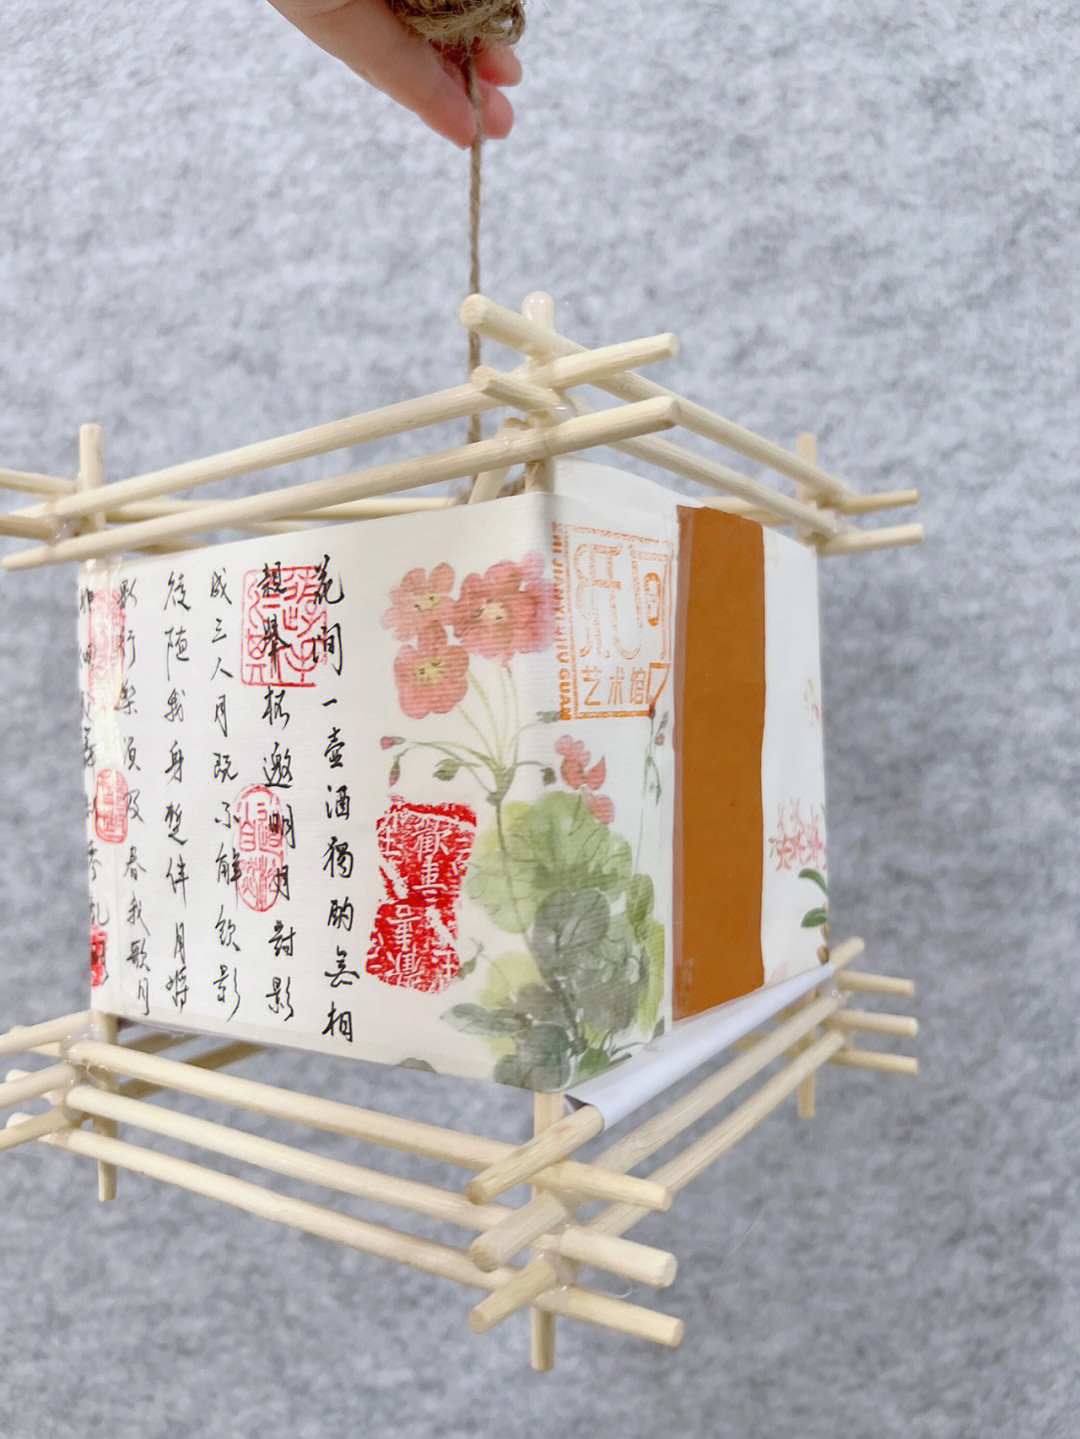 灯笼用一次性筷子和宣纸制作,详情见首页